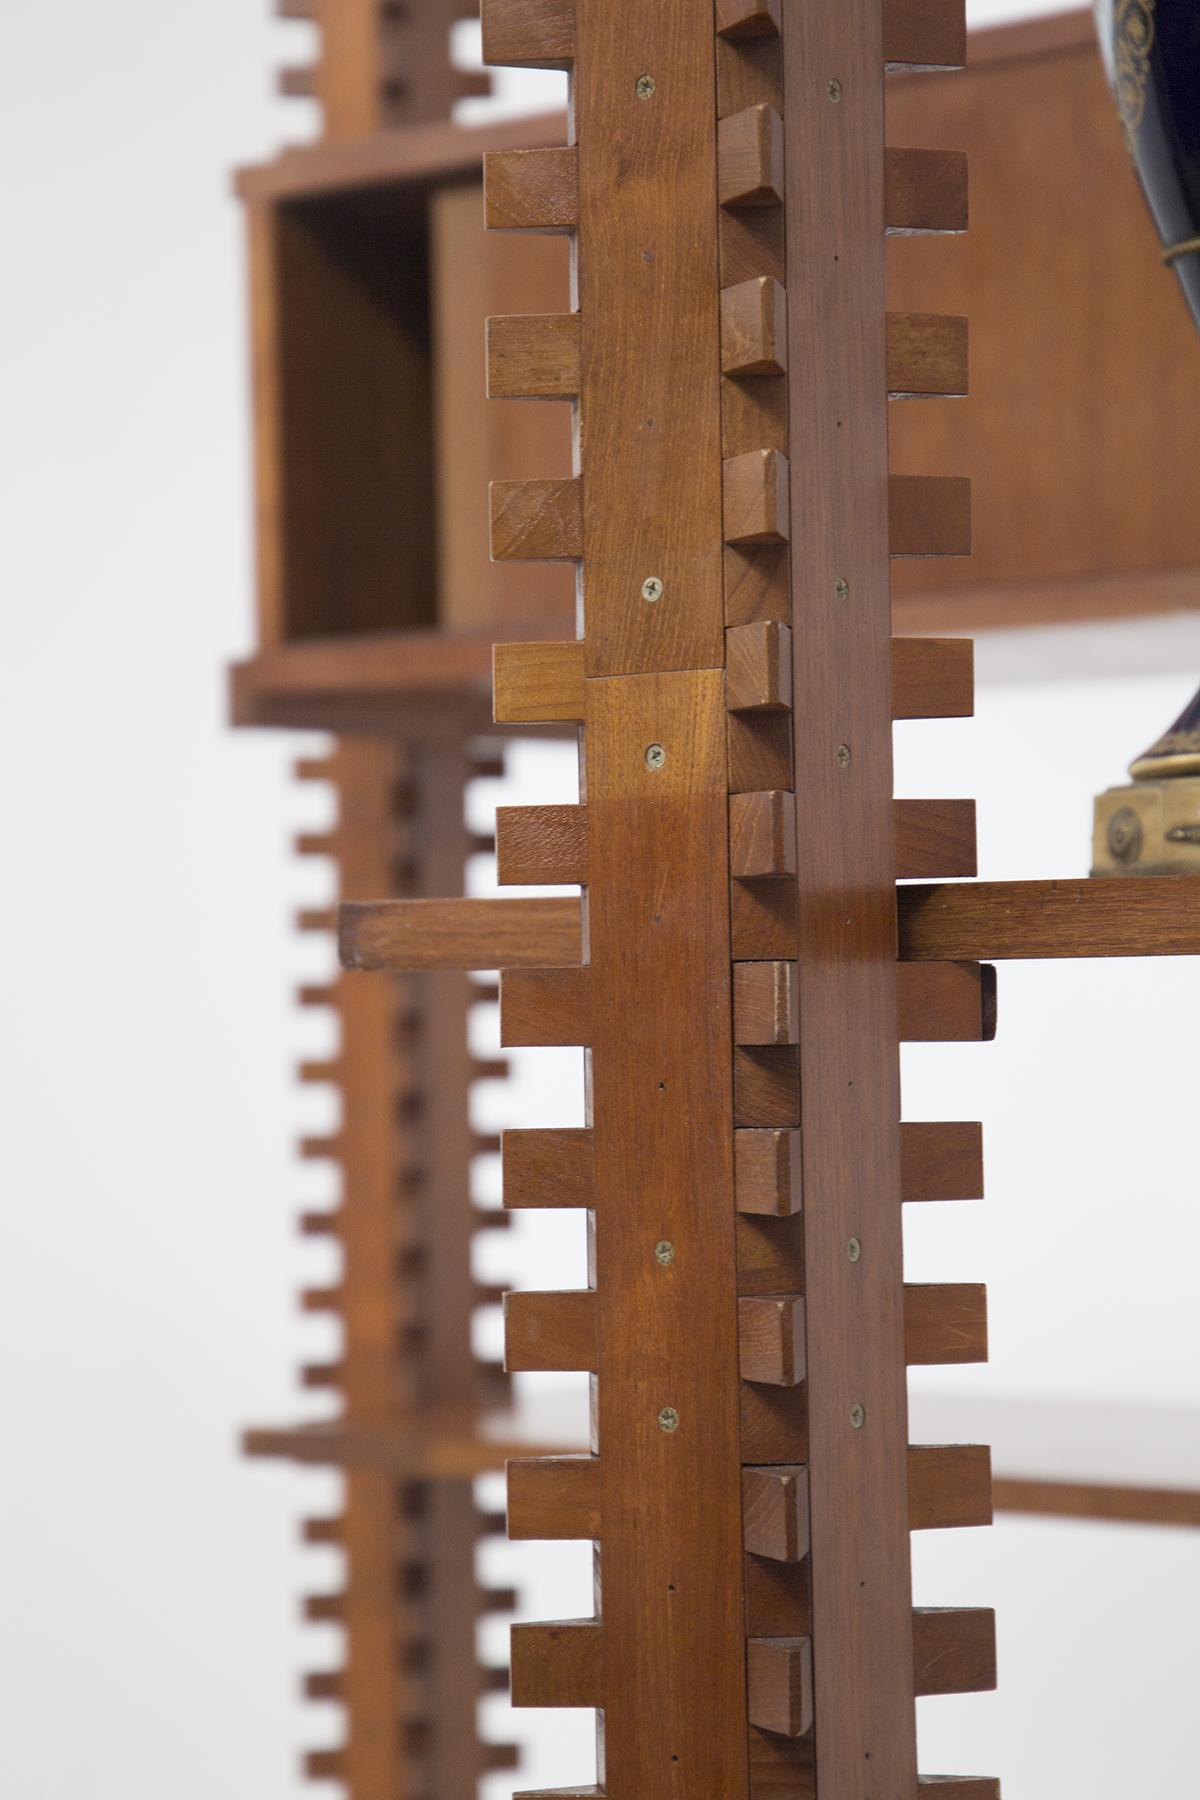 Cette bibliothèque modulaire vintage en bois a été conçue par Ico Parisi pour le fabricant italien MIM, dans les années 50. La bibliothèque en bois s'appelle Lerici et a été publiée dans le livre d'Ico Parisi et sur Domus. Il est entièrement